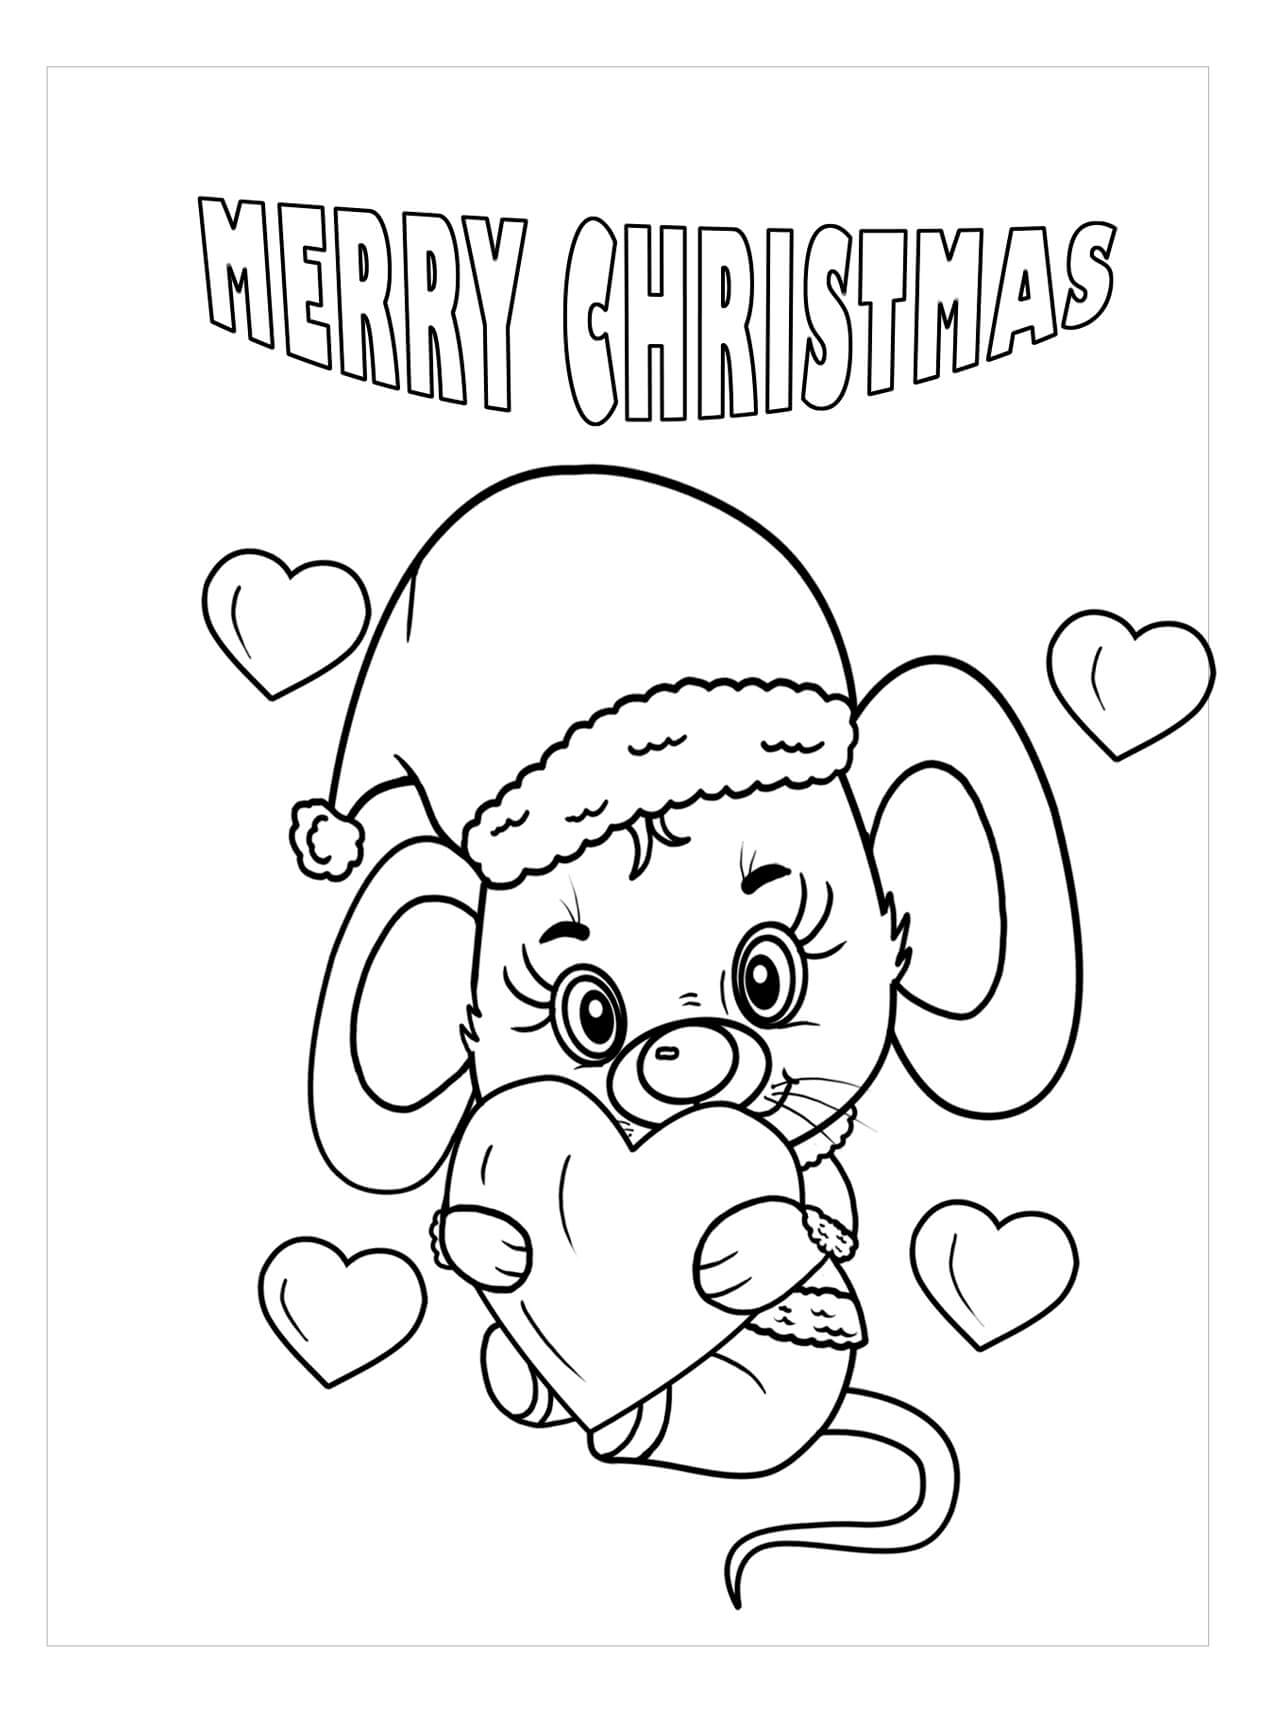 Rato Segurando Coração em Feliz Natal para colorir